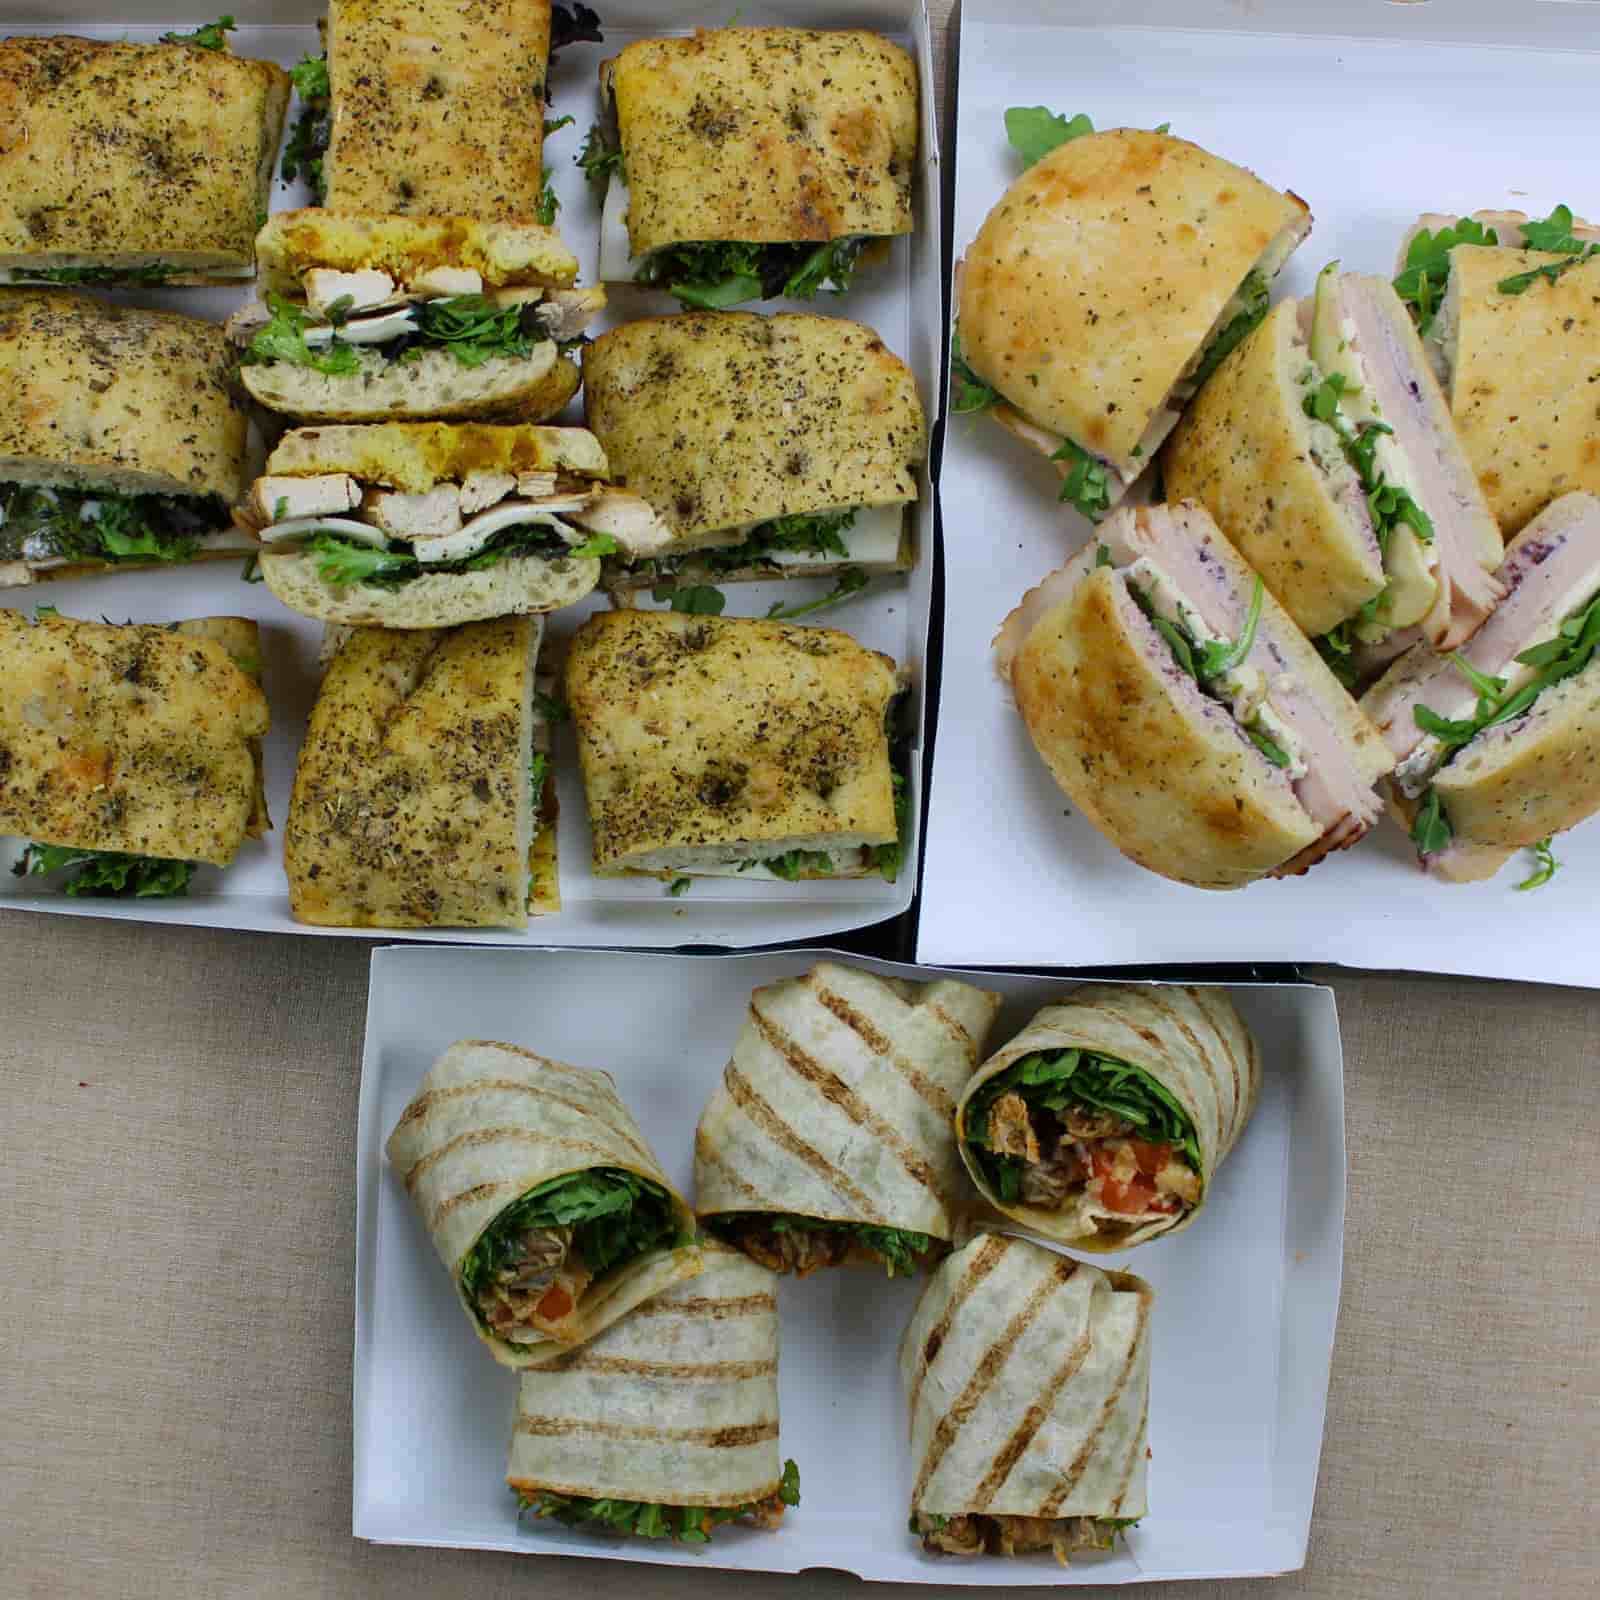 Mixed Sandwich Platter AvecPlaisirs